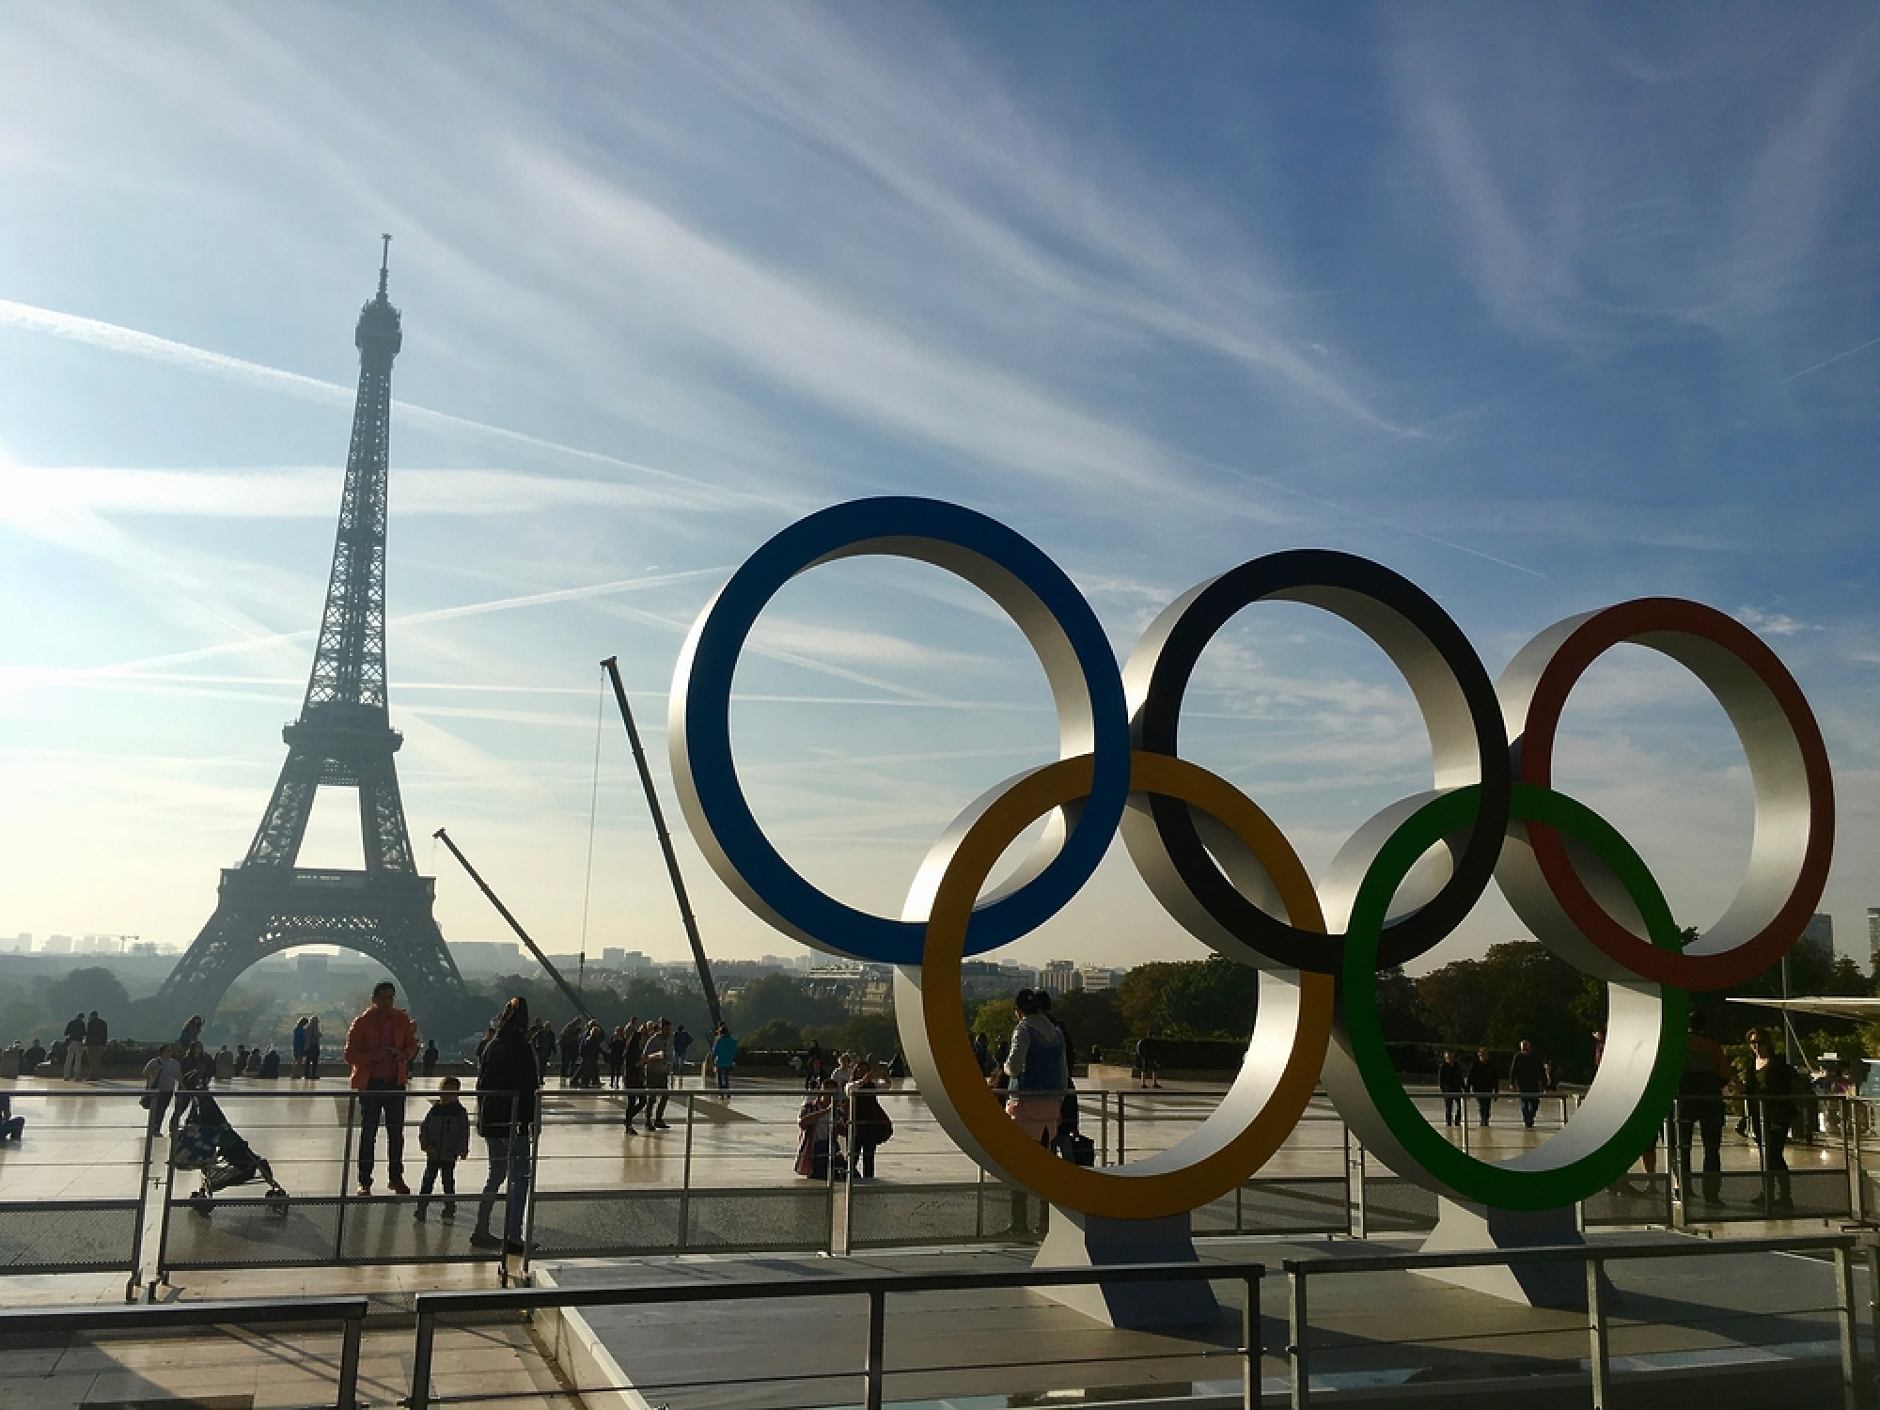 Франция получи олимпийски медал в колоезденето 124 години по-късно